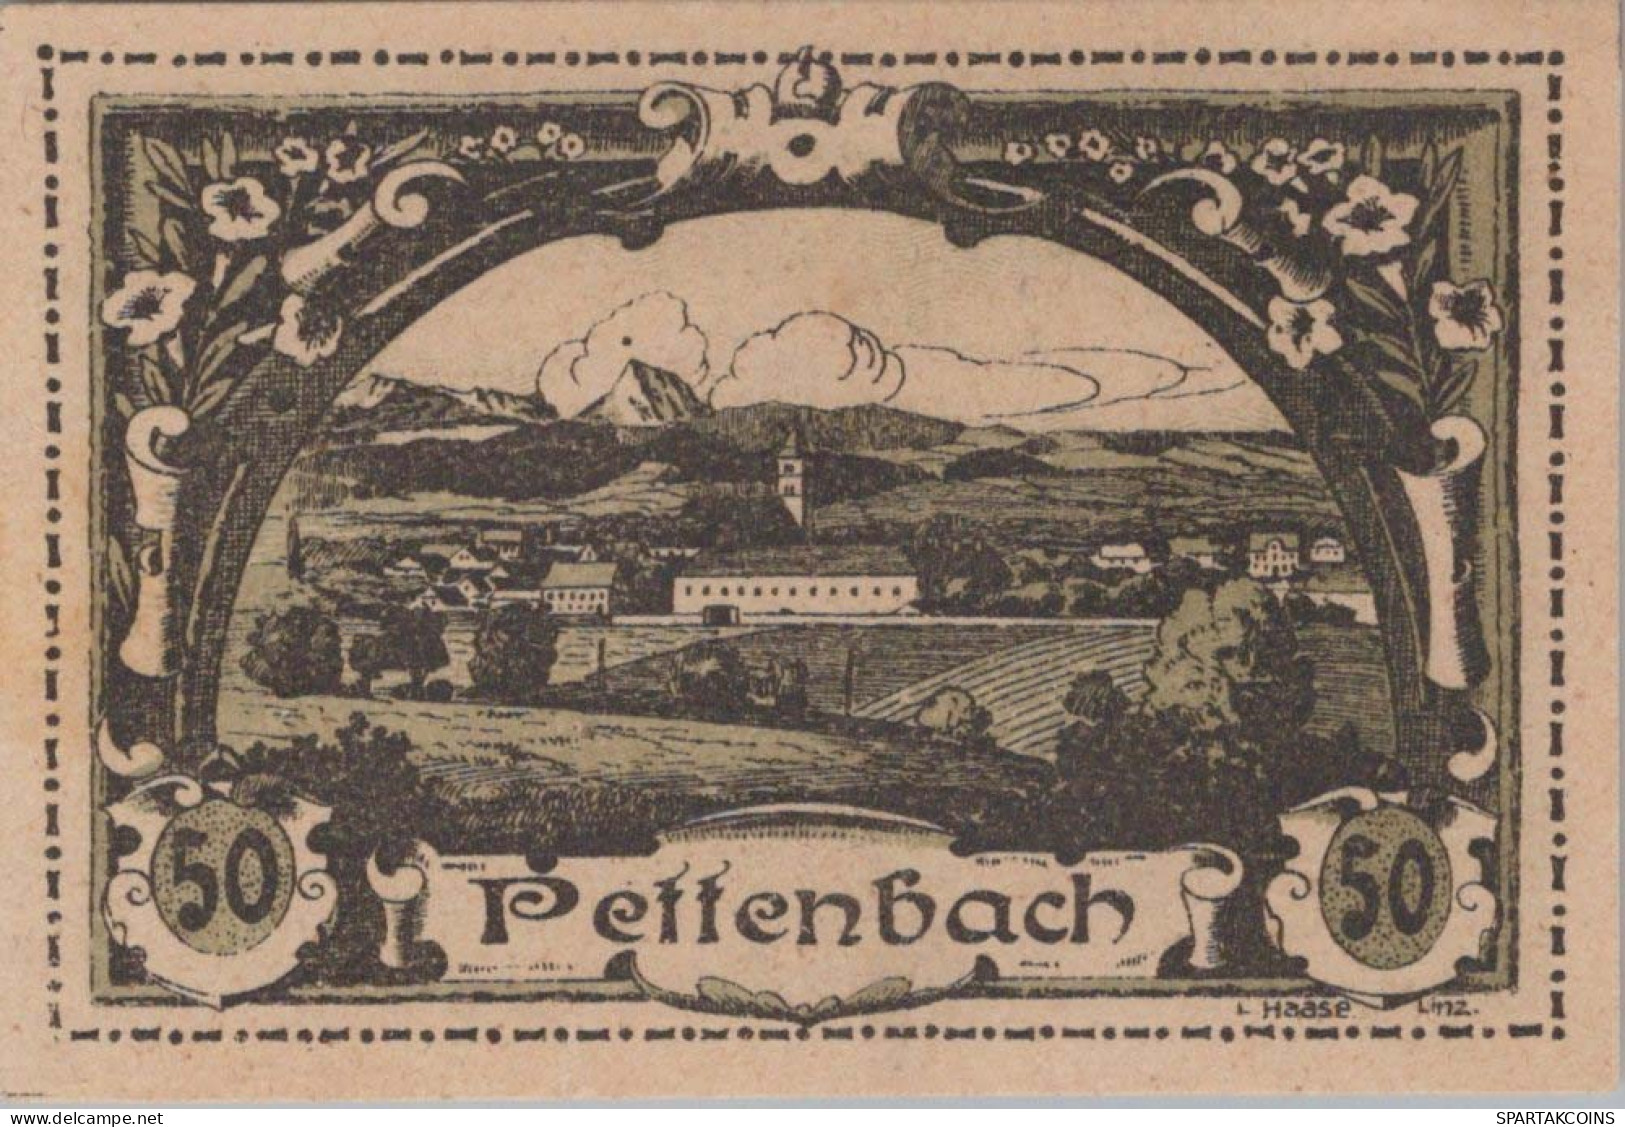 20 HELLER 1920 Stadt PETTENBACH Oberösterreich Österreich Notgeld #PE518 - [11] Local Banknote Issues